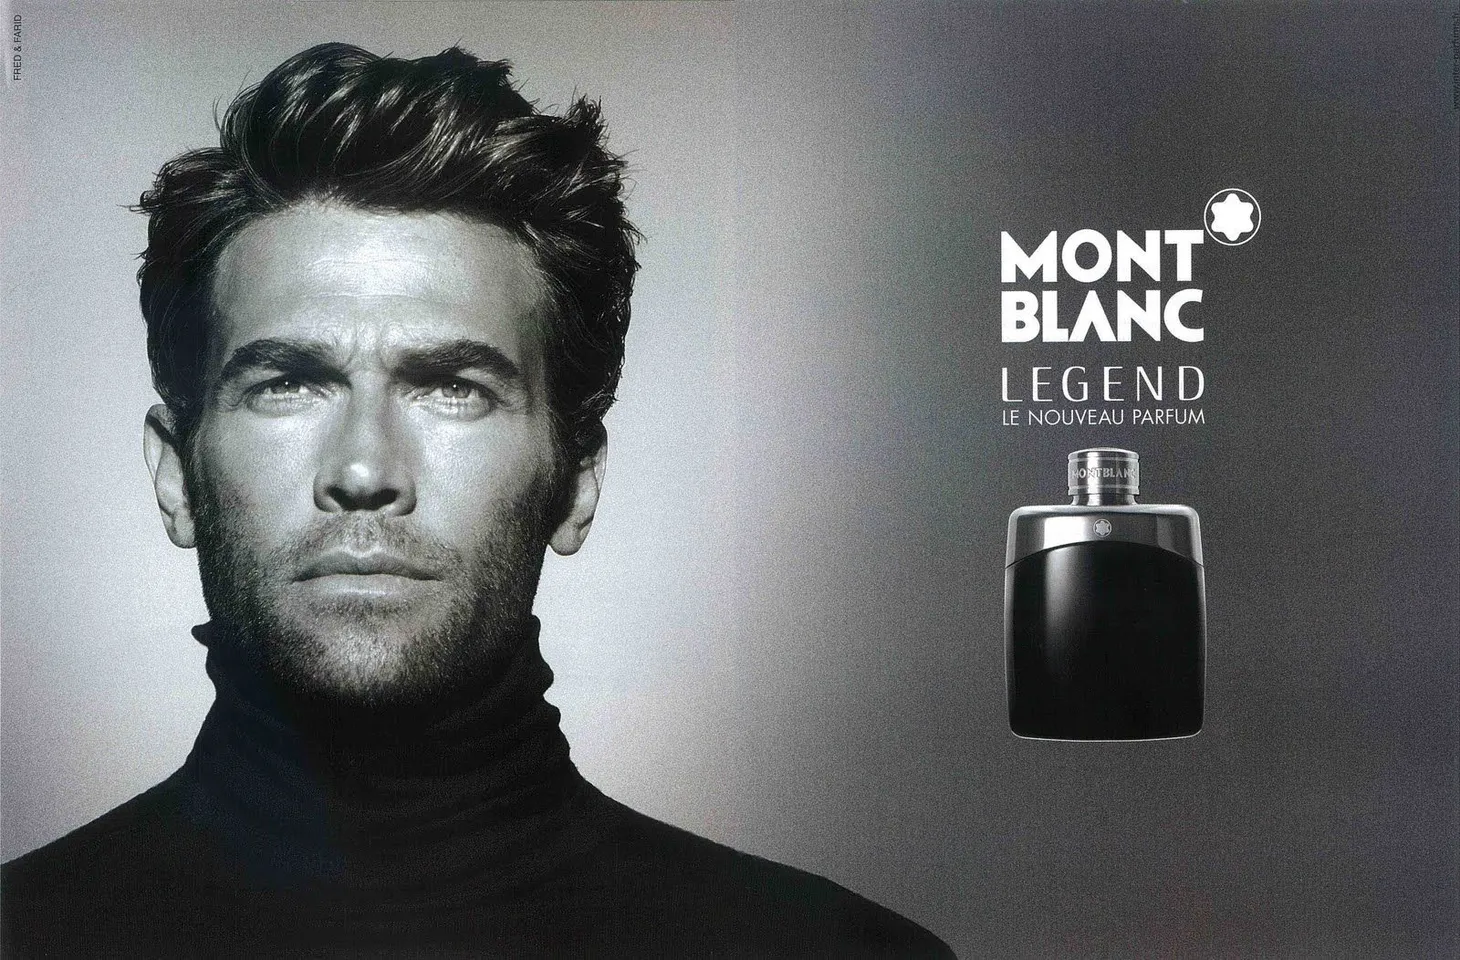 Nước hoa Mont blanc legend special edition 2013 mang mùi hương ấn tượng